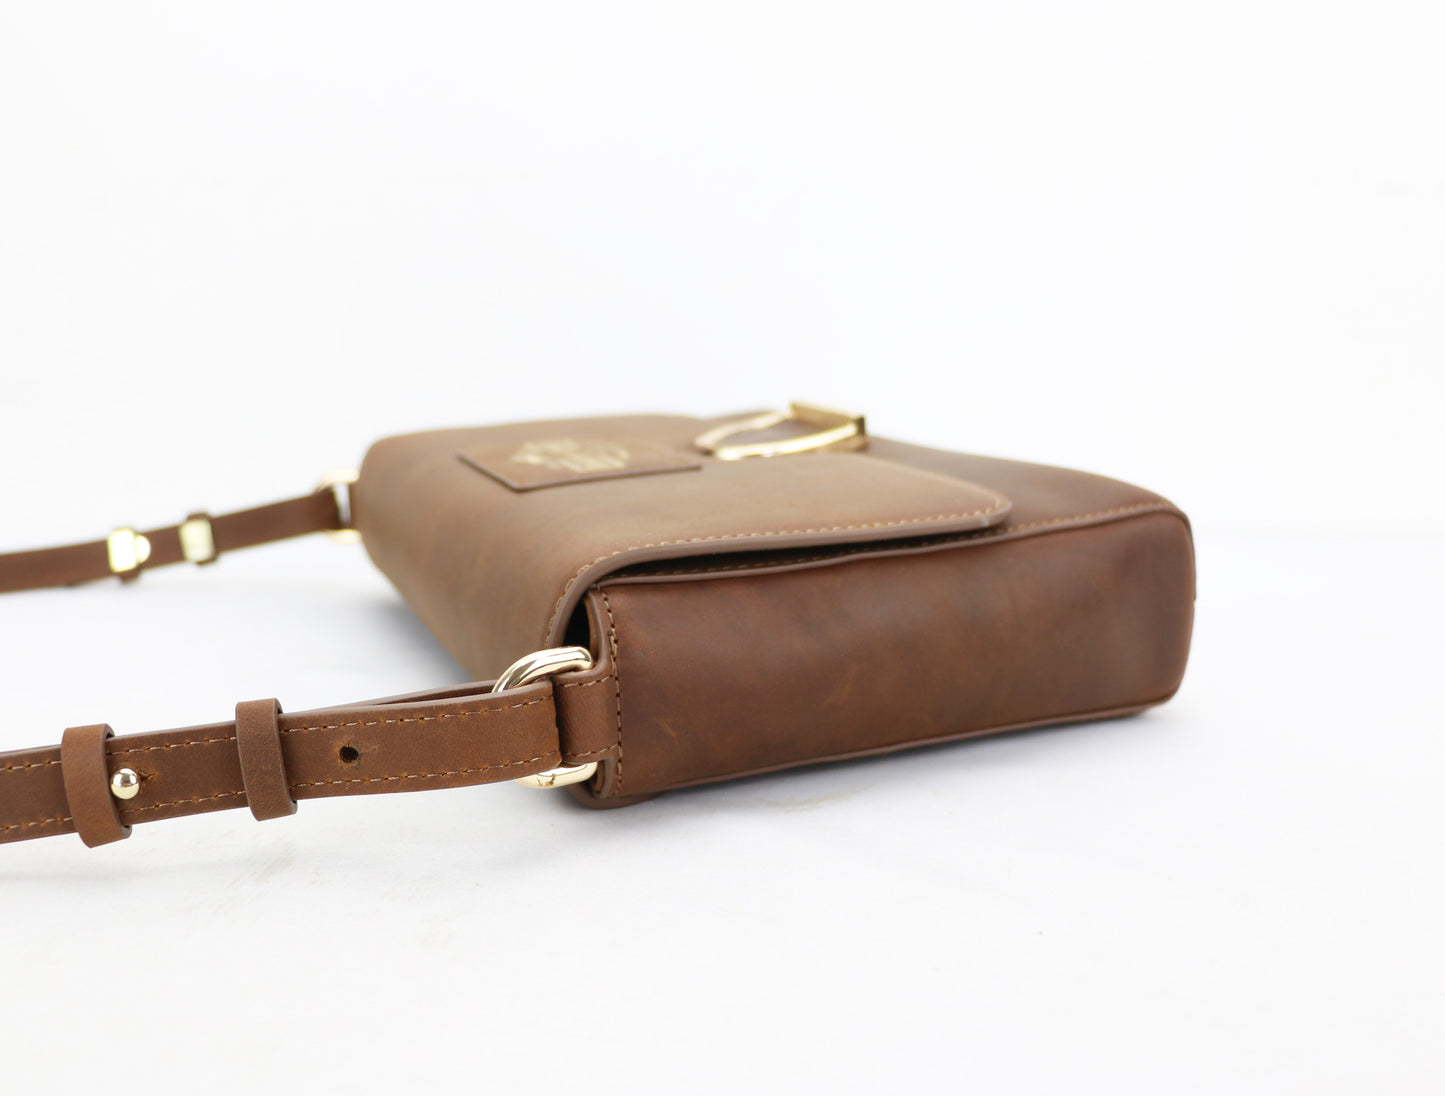 Oakbark & Chrome Shoulder Bag in Brindle